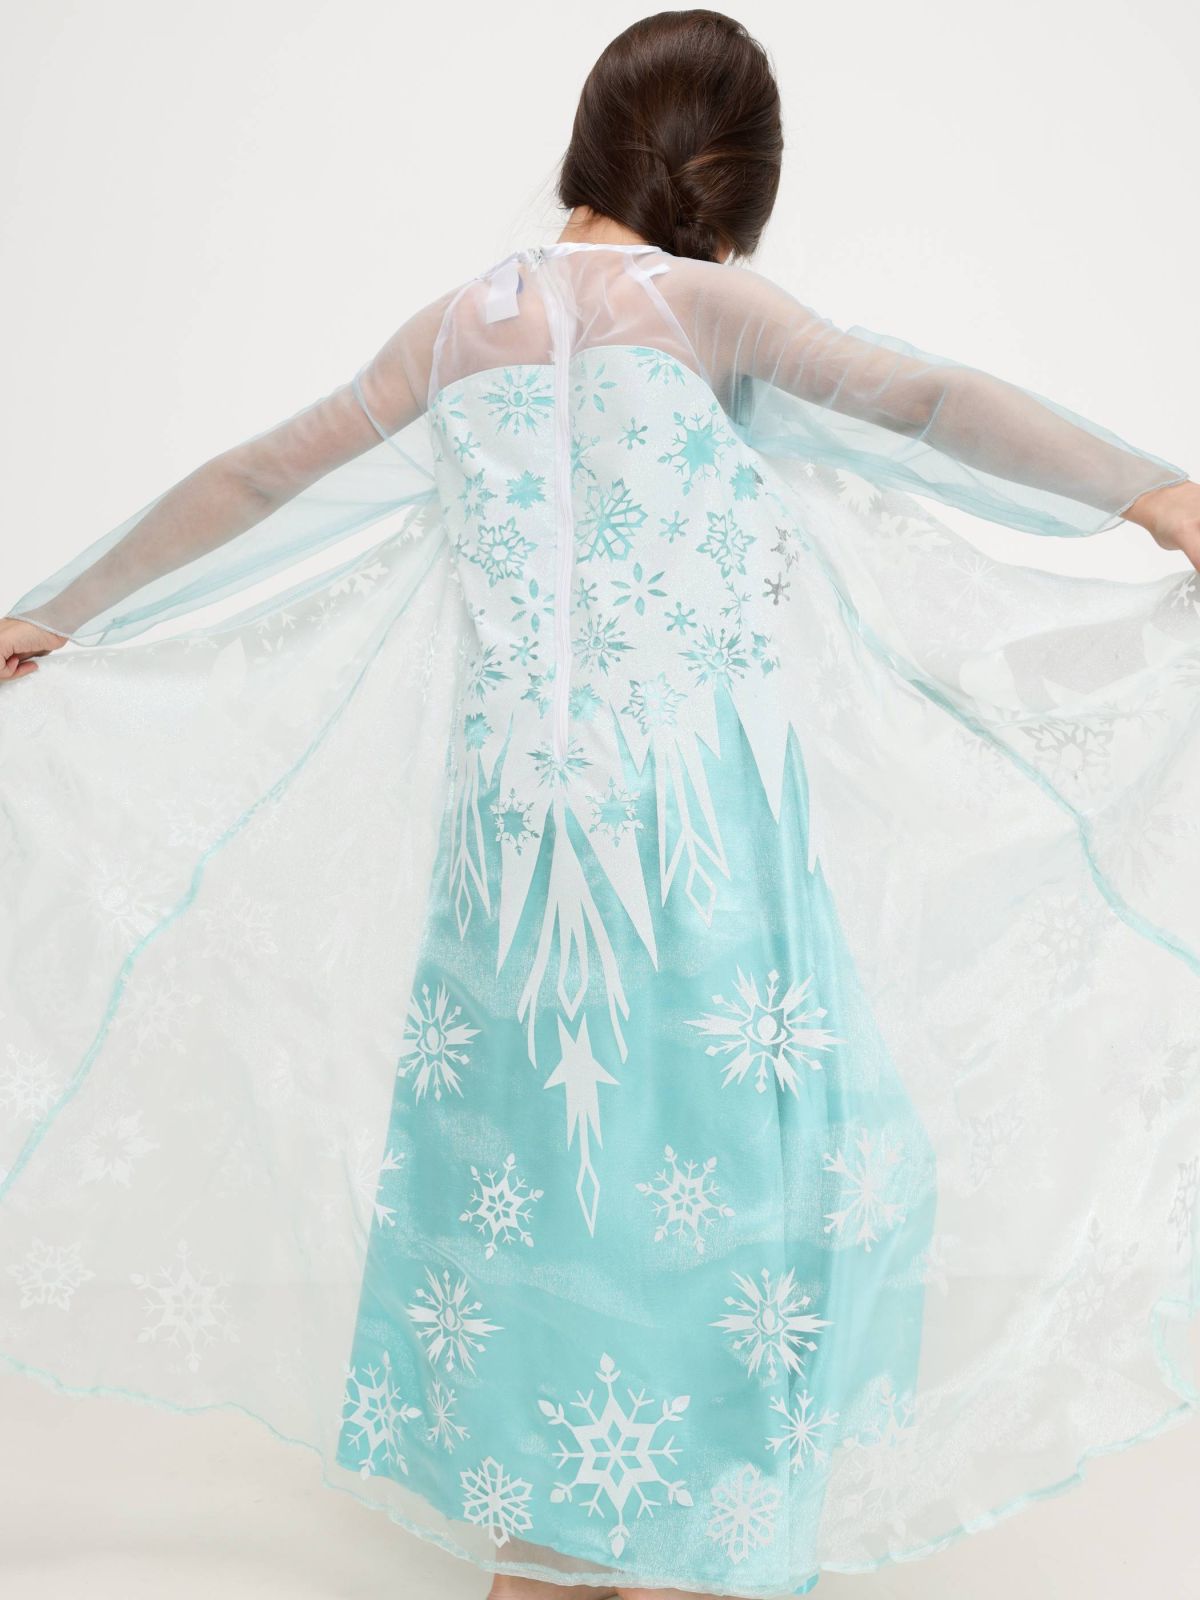  תחפושת Frozen אלזה / Purim Collection של SHOSHI ZOHAR